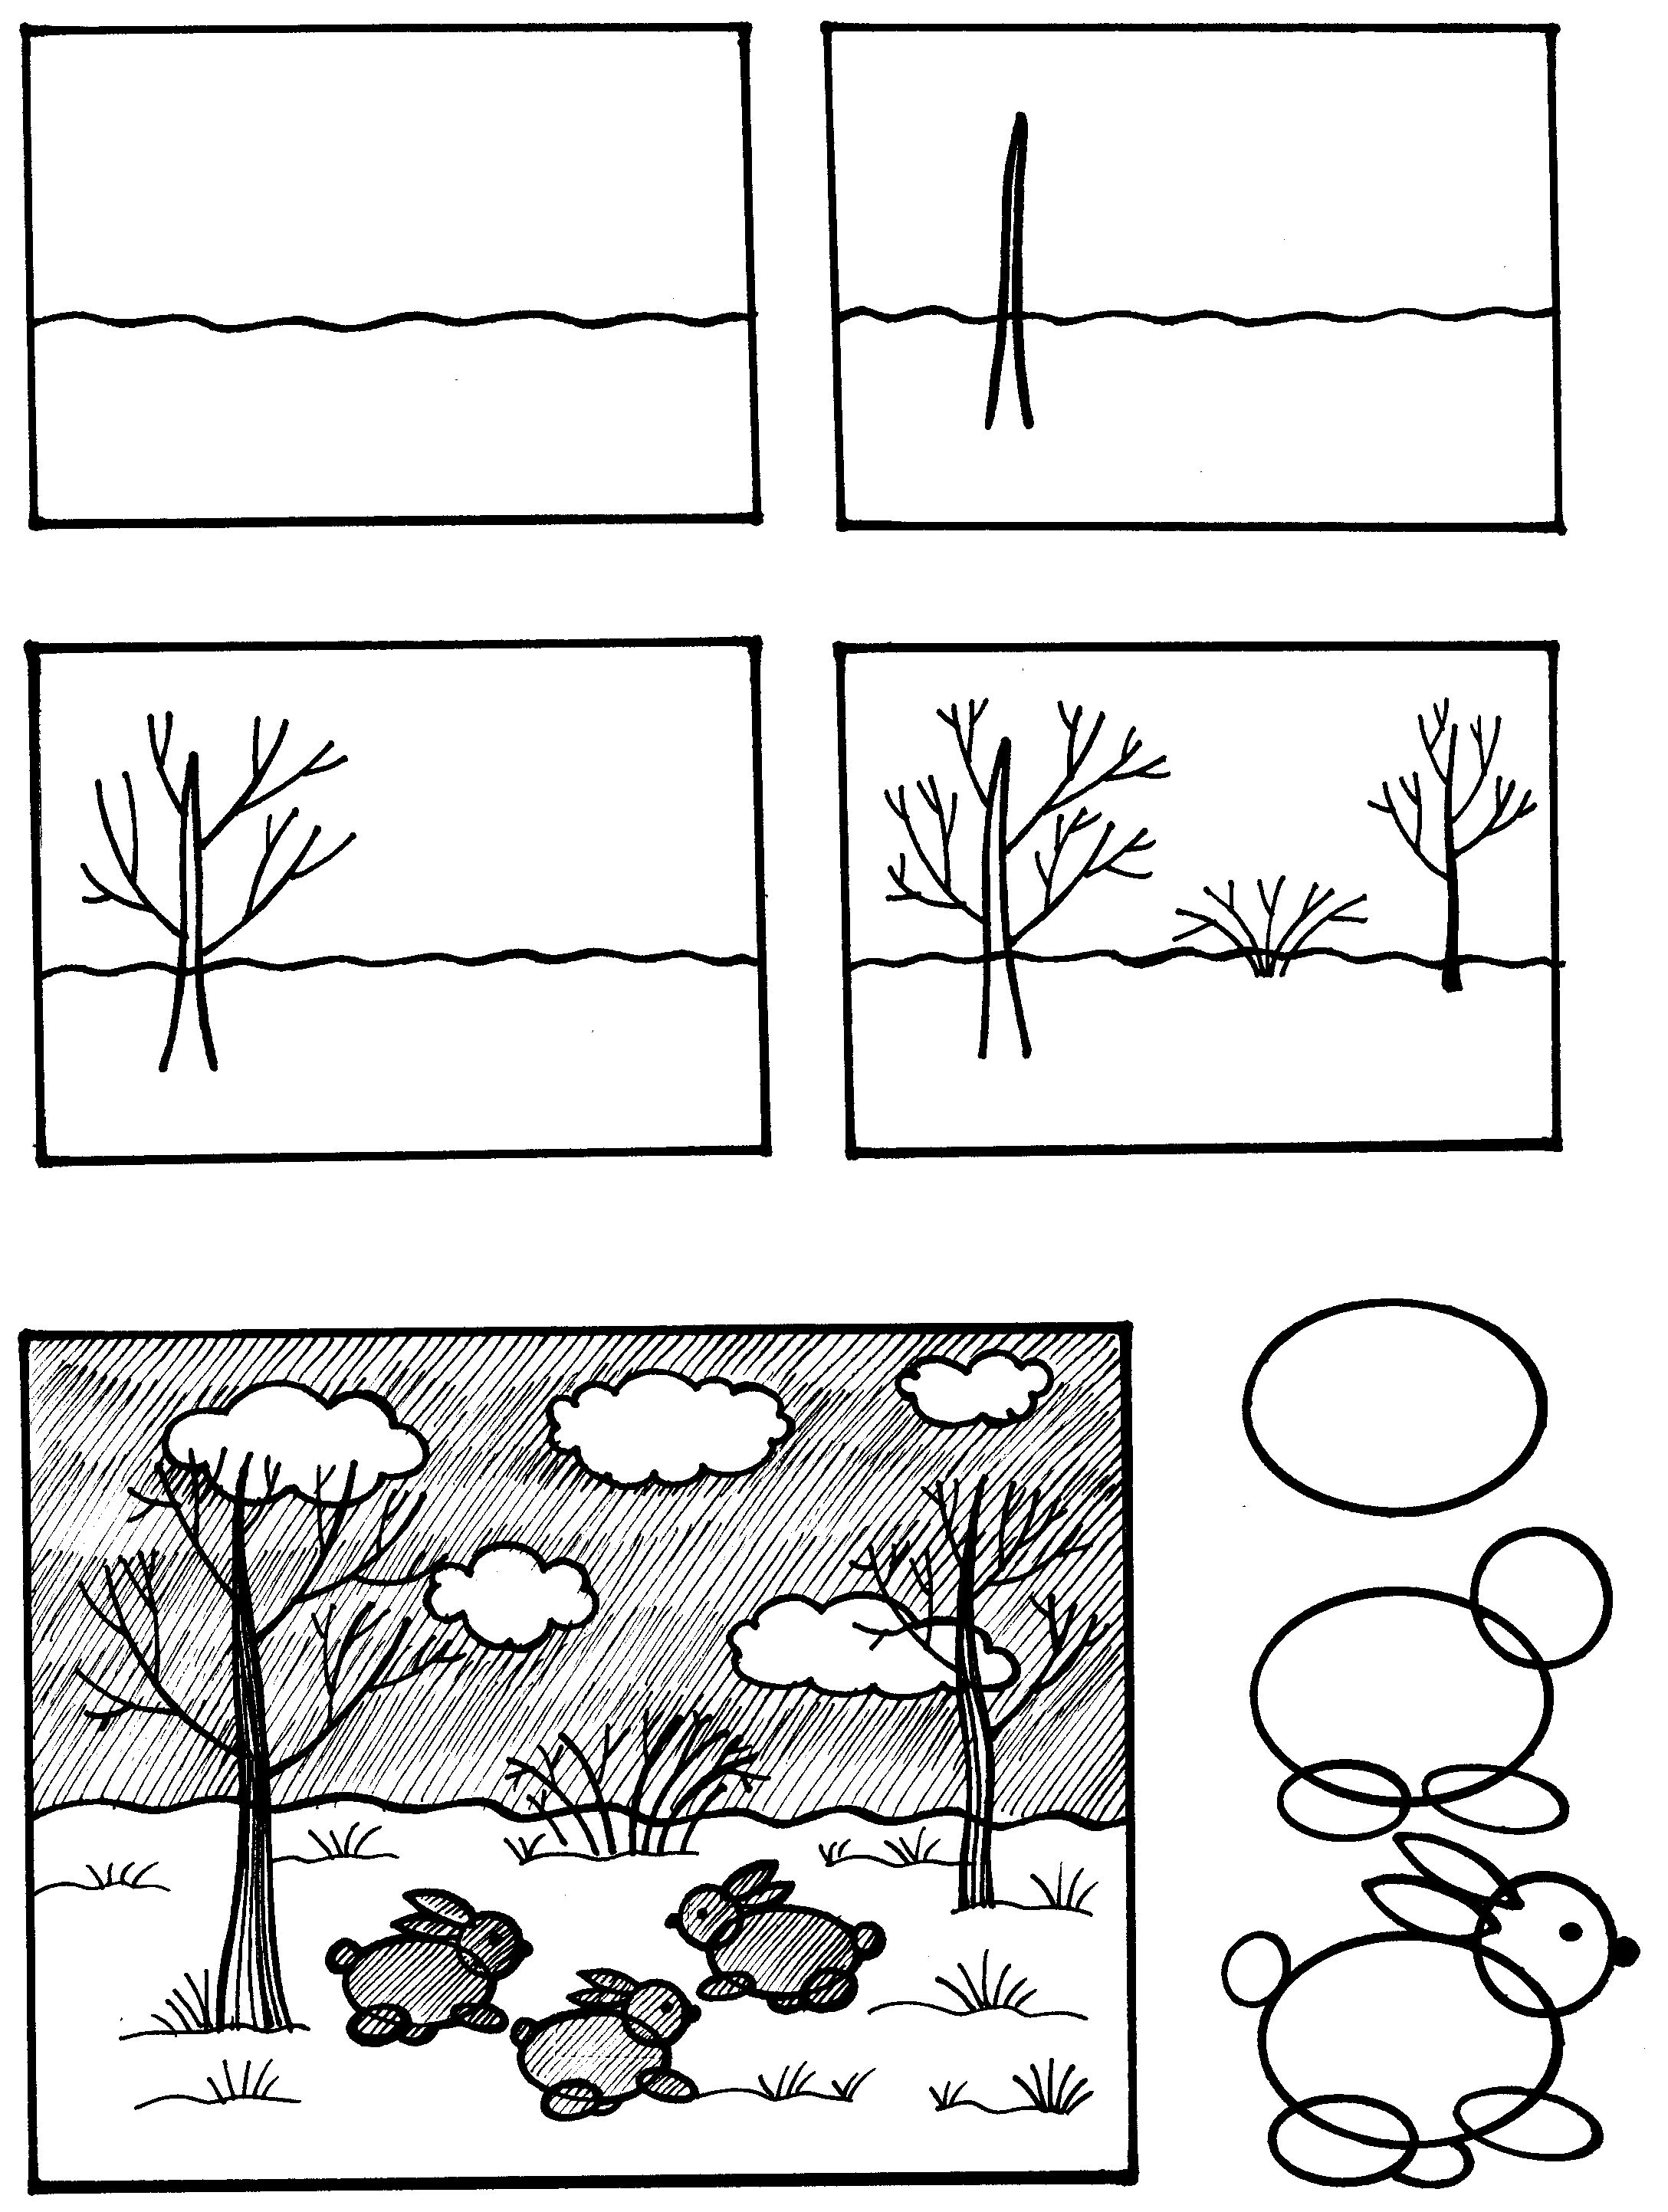 Последовательность рисования пейзажа для детей